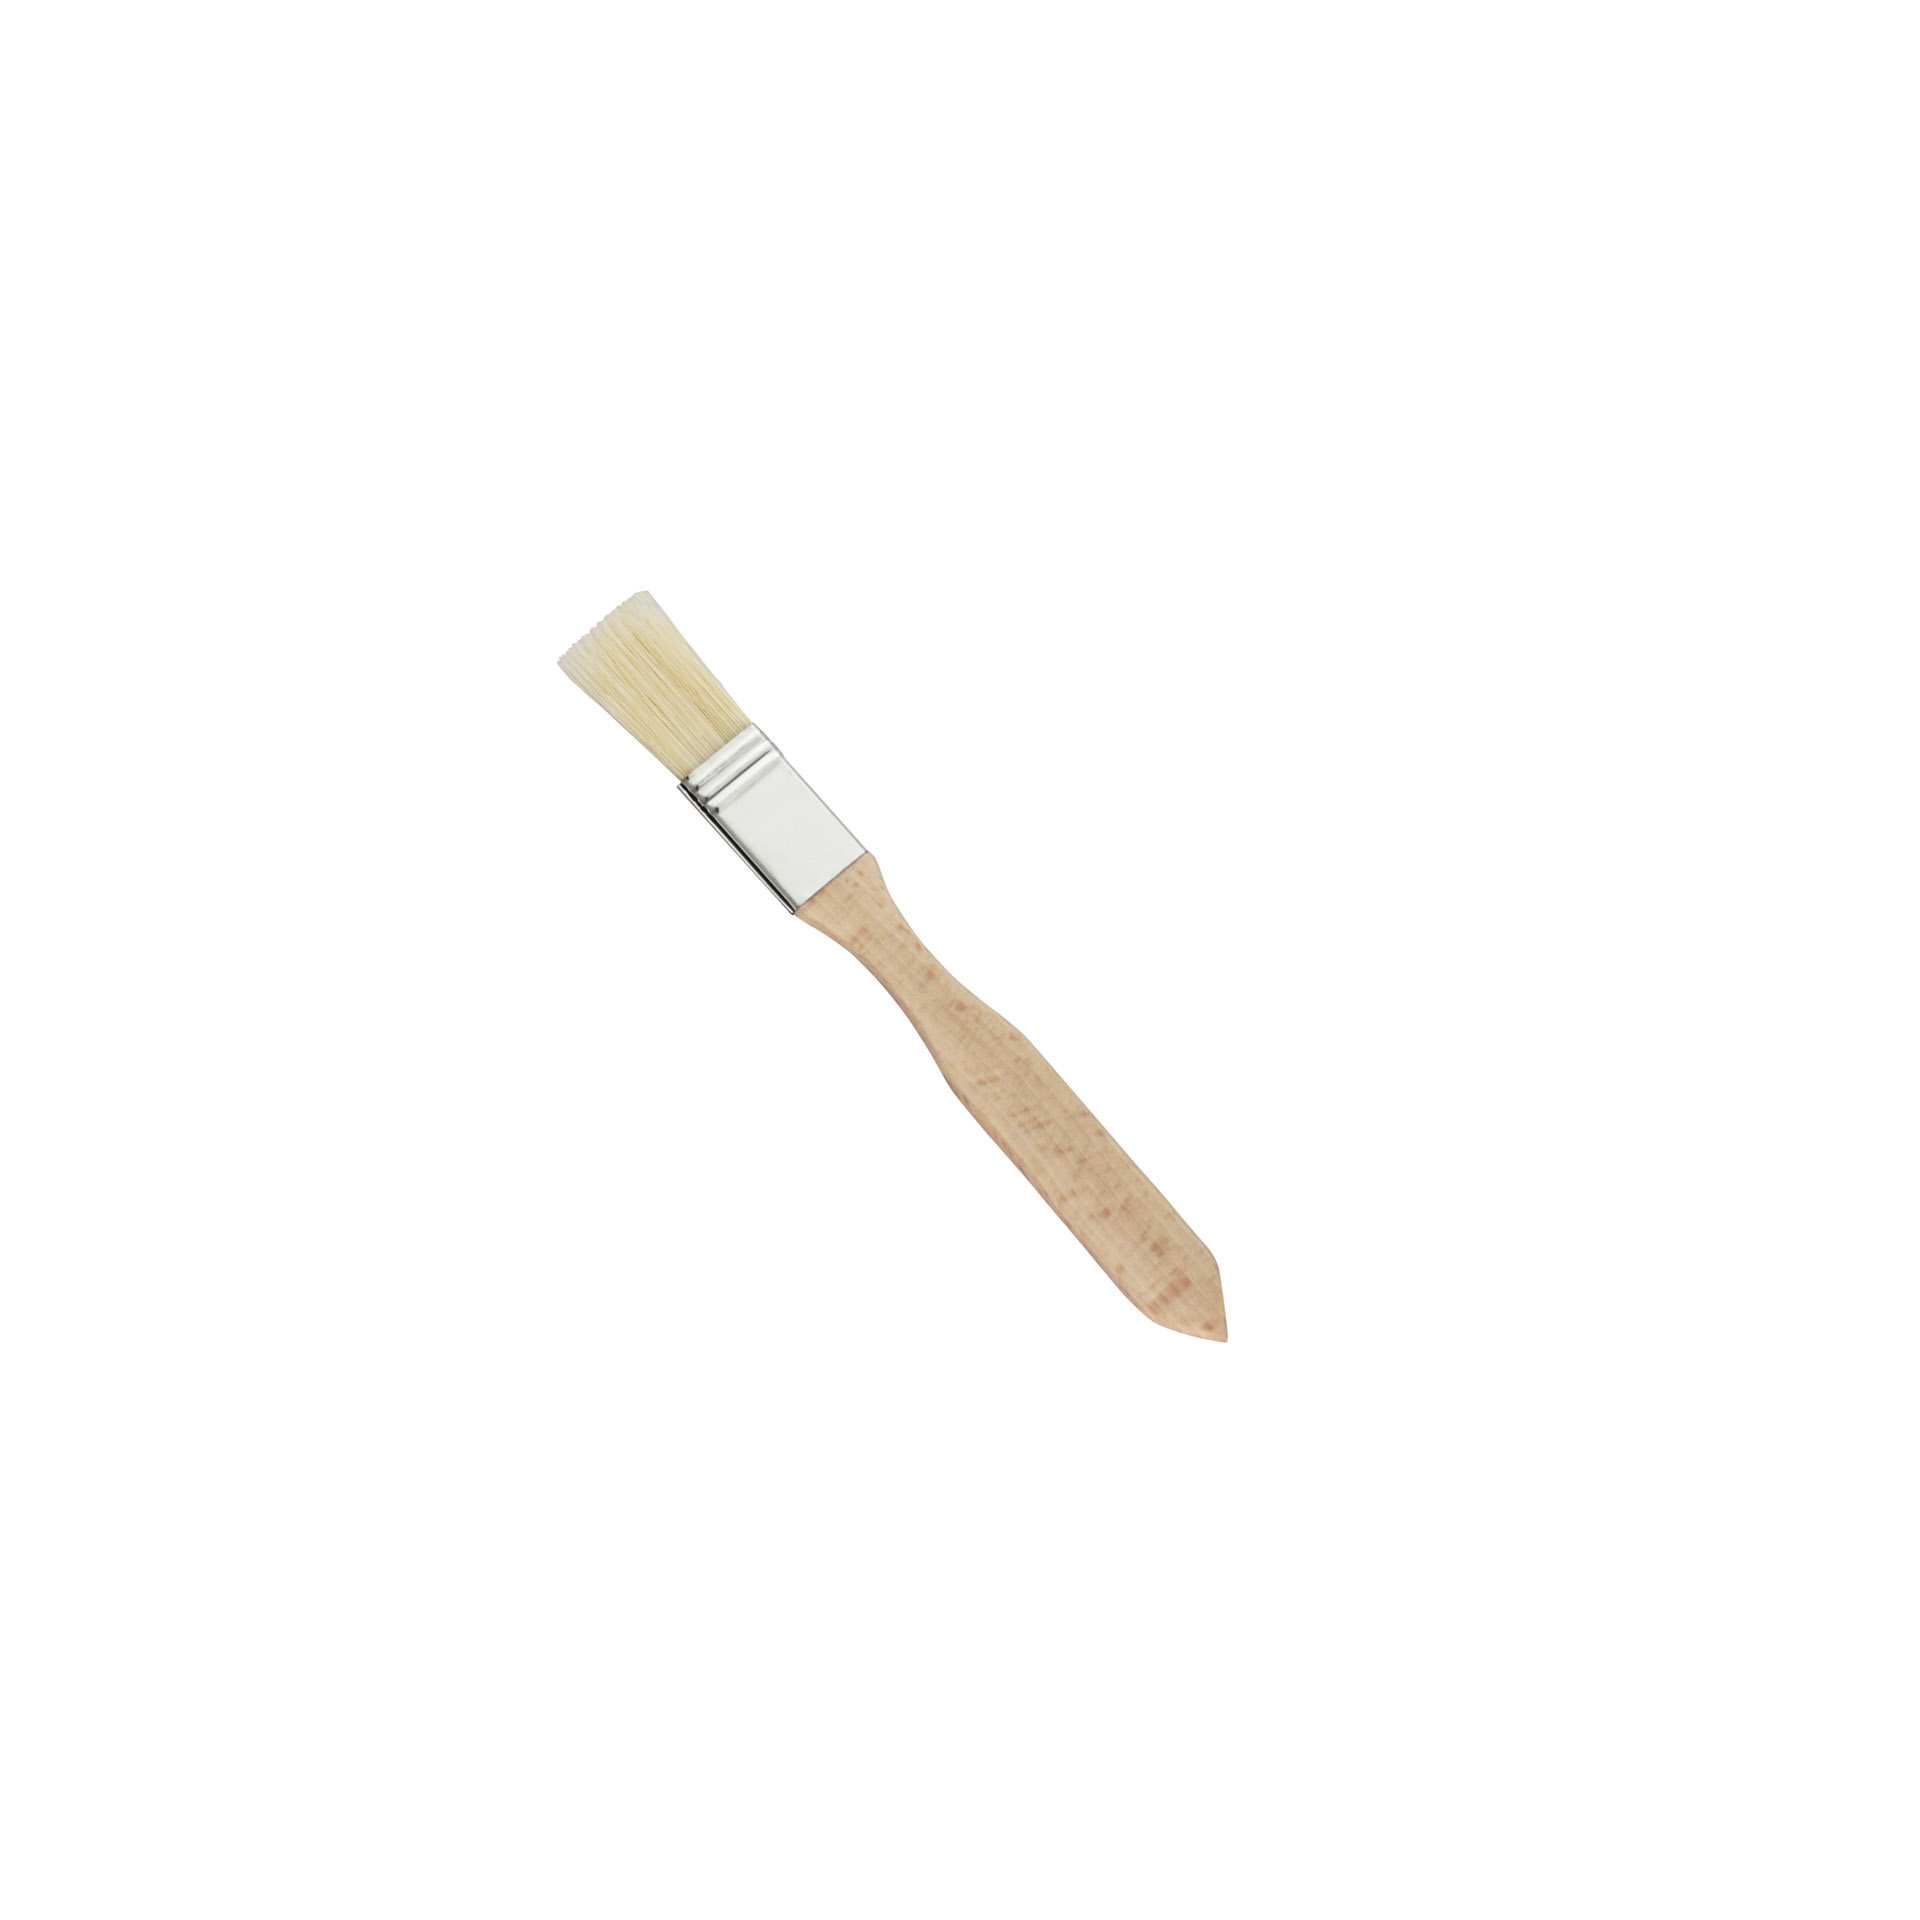 Bäckerpinsel - weiß - Abm. 19,0 x 2,0 x 6,5 cm - Naturborste - 200213-C